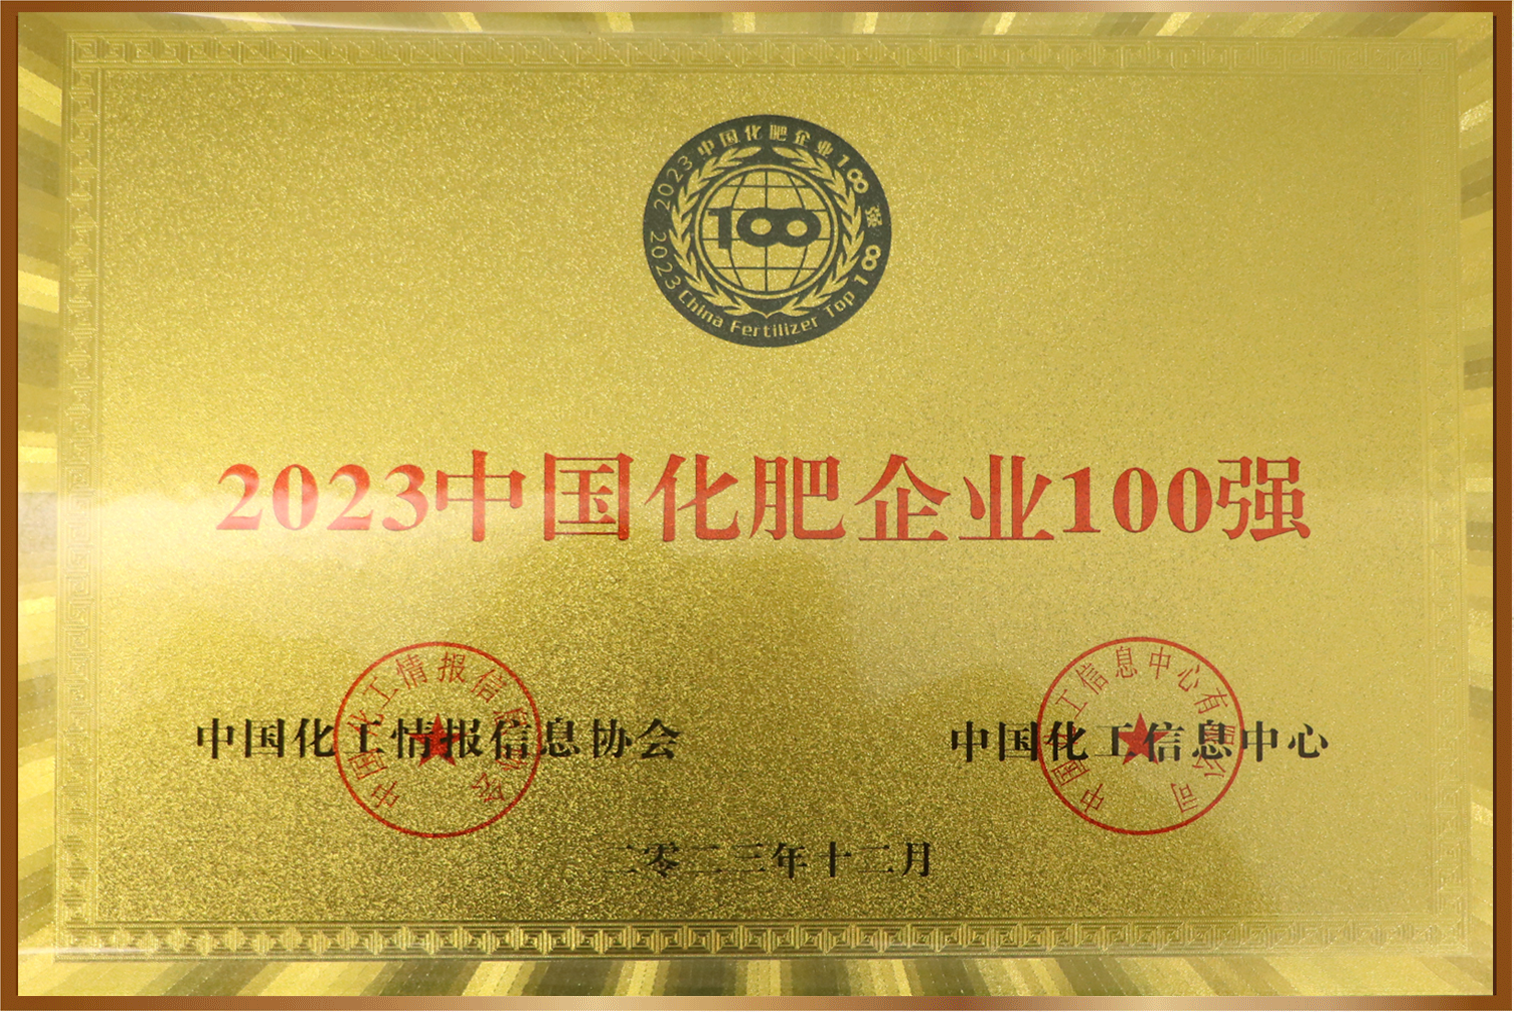 2023中国化肥企业100强